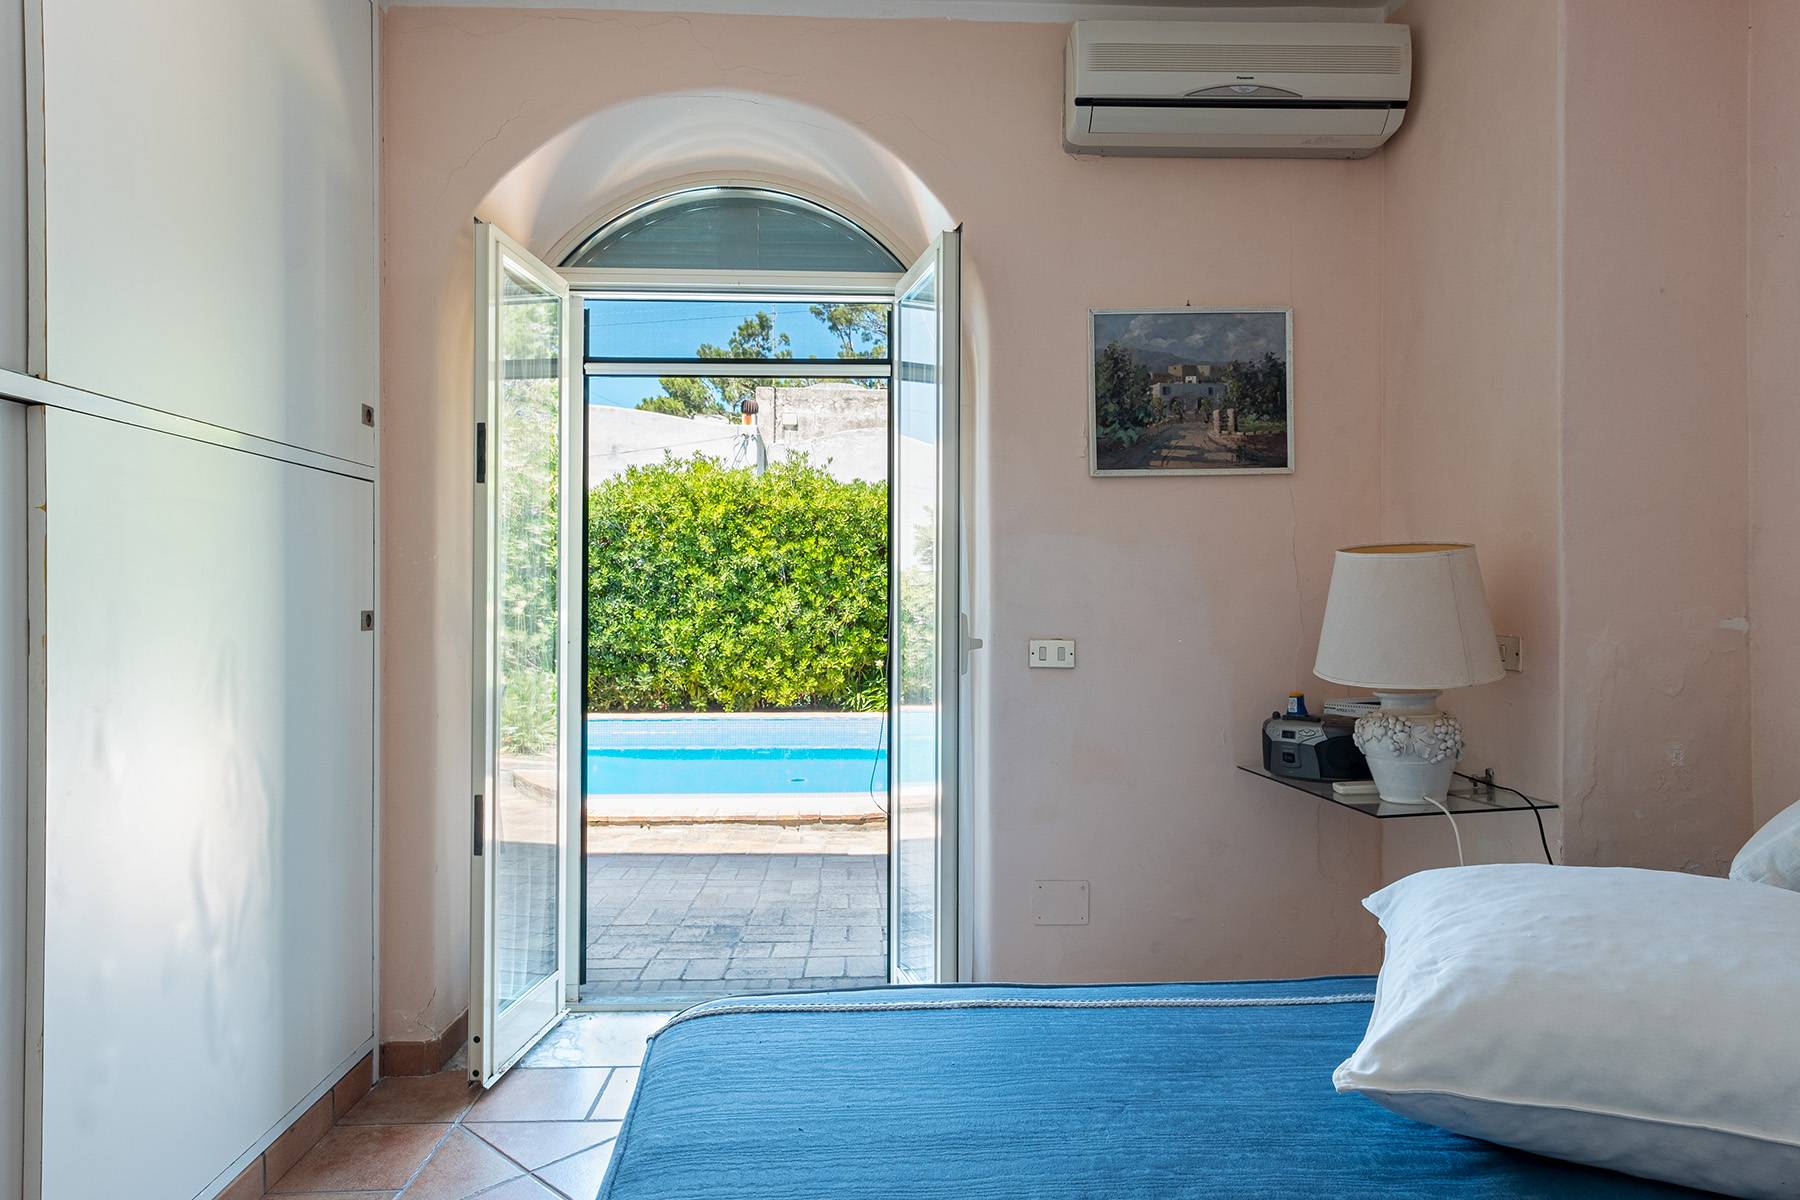 Villa in Vendita a Capri: 5 locali, 300 mq - Foto 15